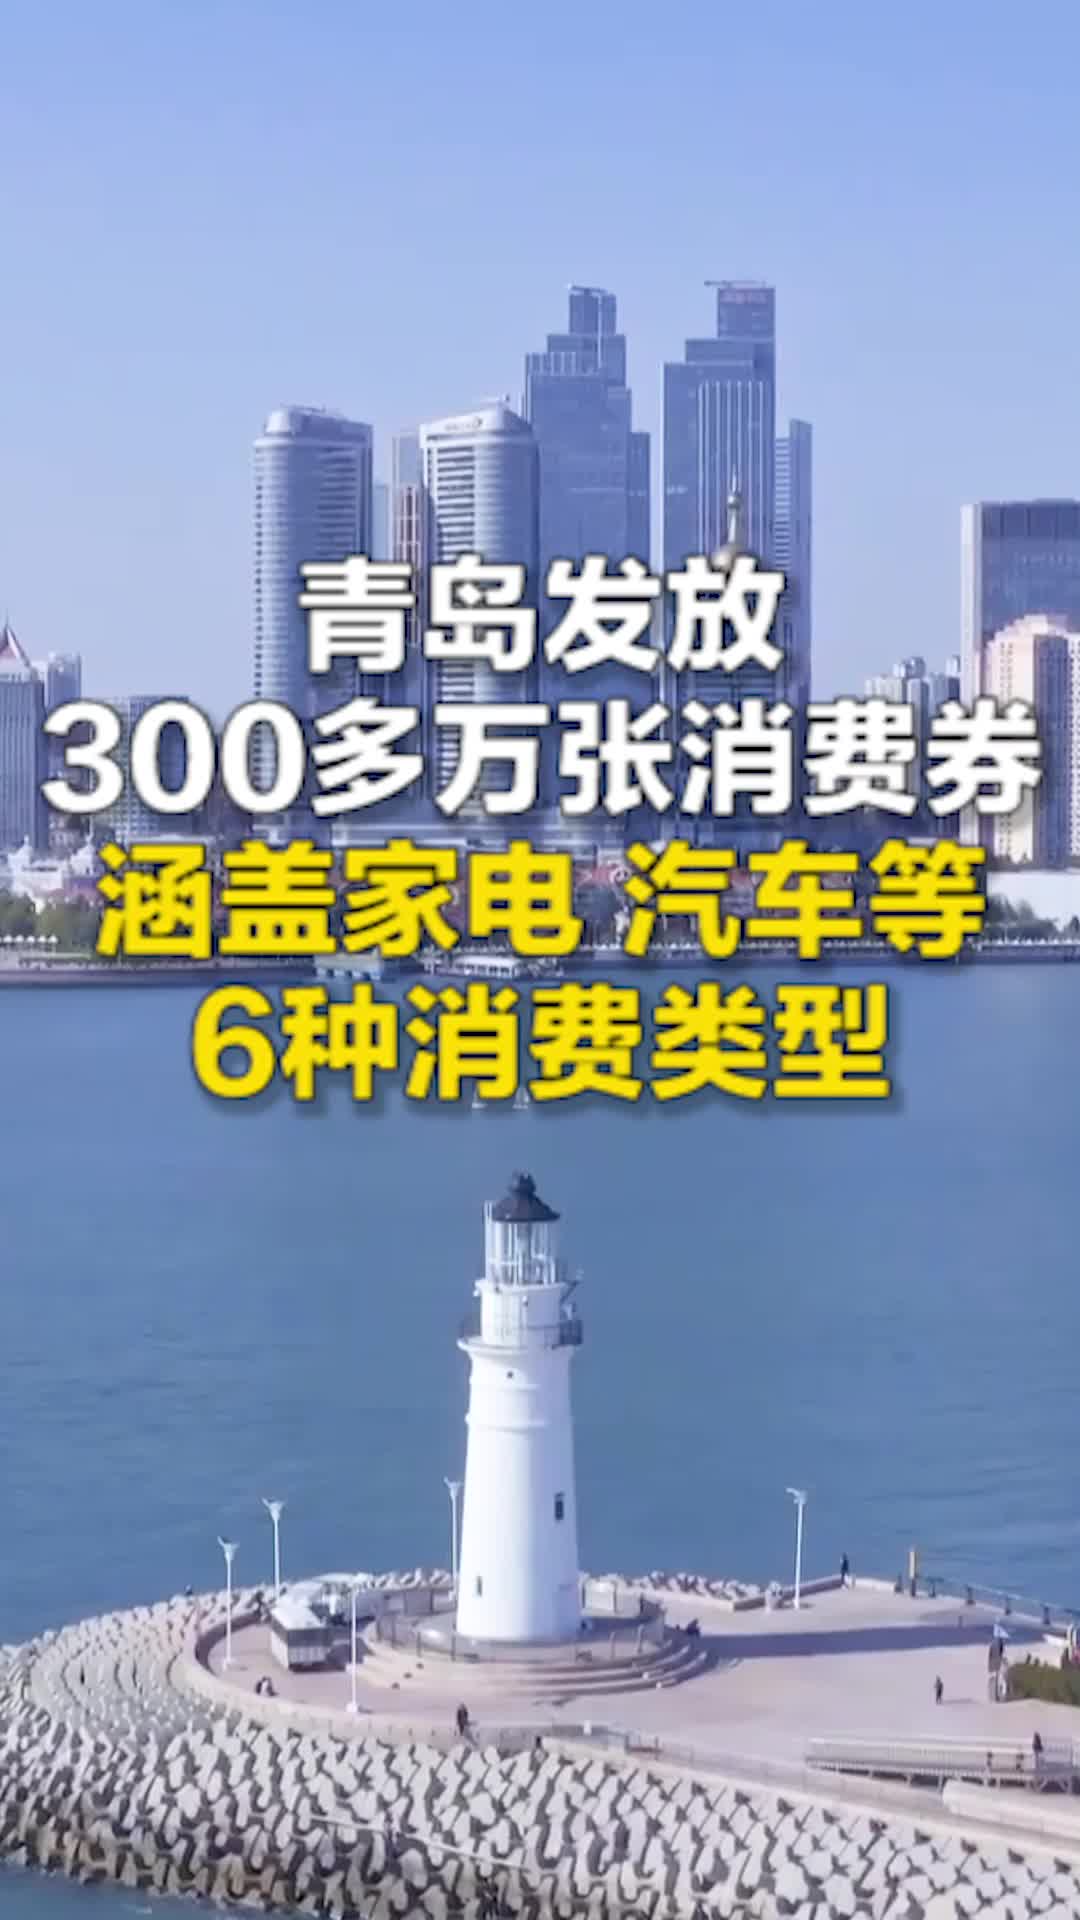 亿惠青岛 嗨享生活 青岛发放300多万张消费券 涵盖家电 汽车等6种消费类型